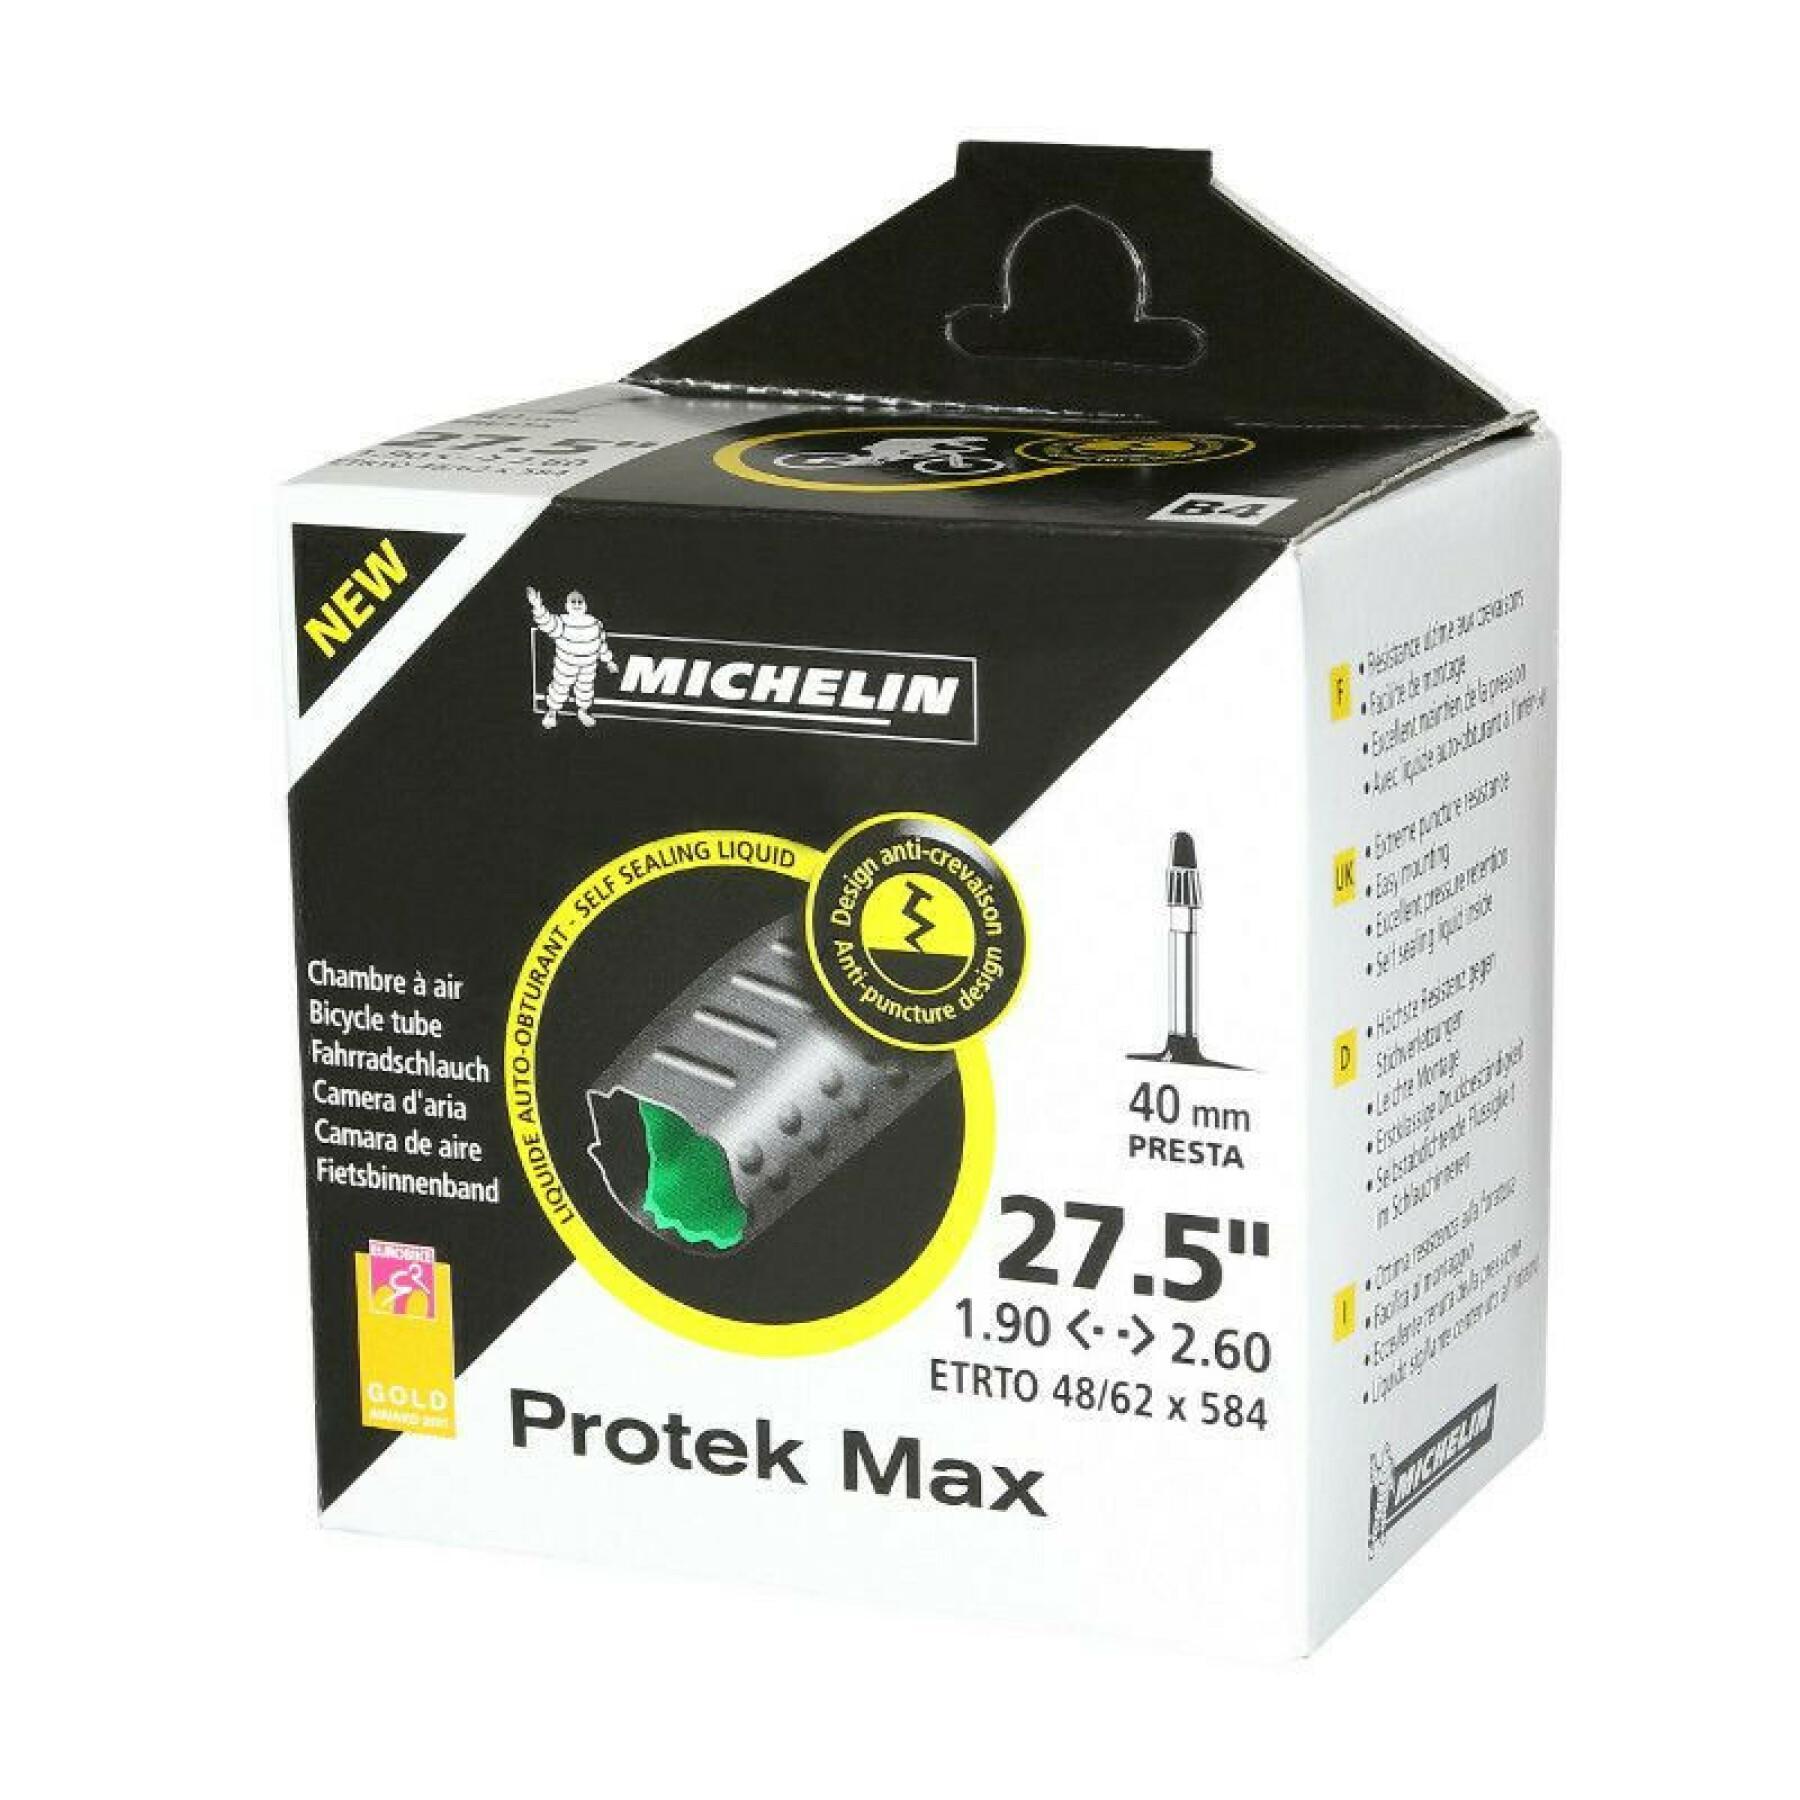 Camera d'aria della valvola Presta con fluido antiforatura Michelin protek max 27.5 x 1.90/2.30